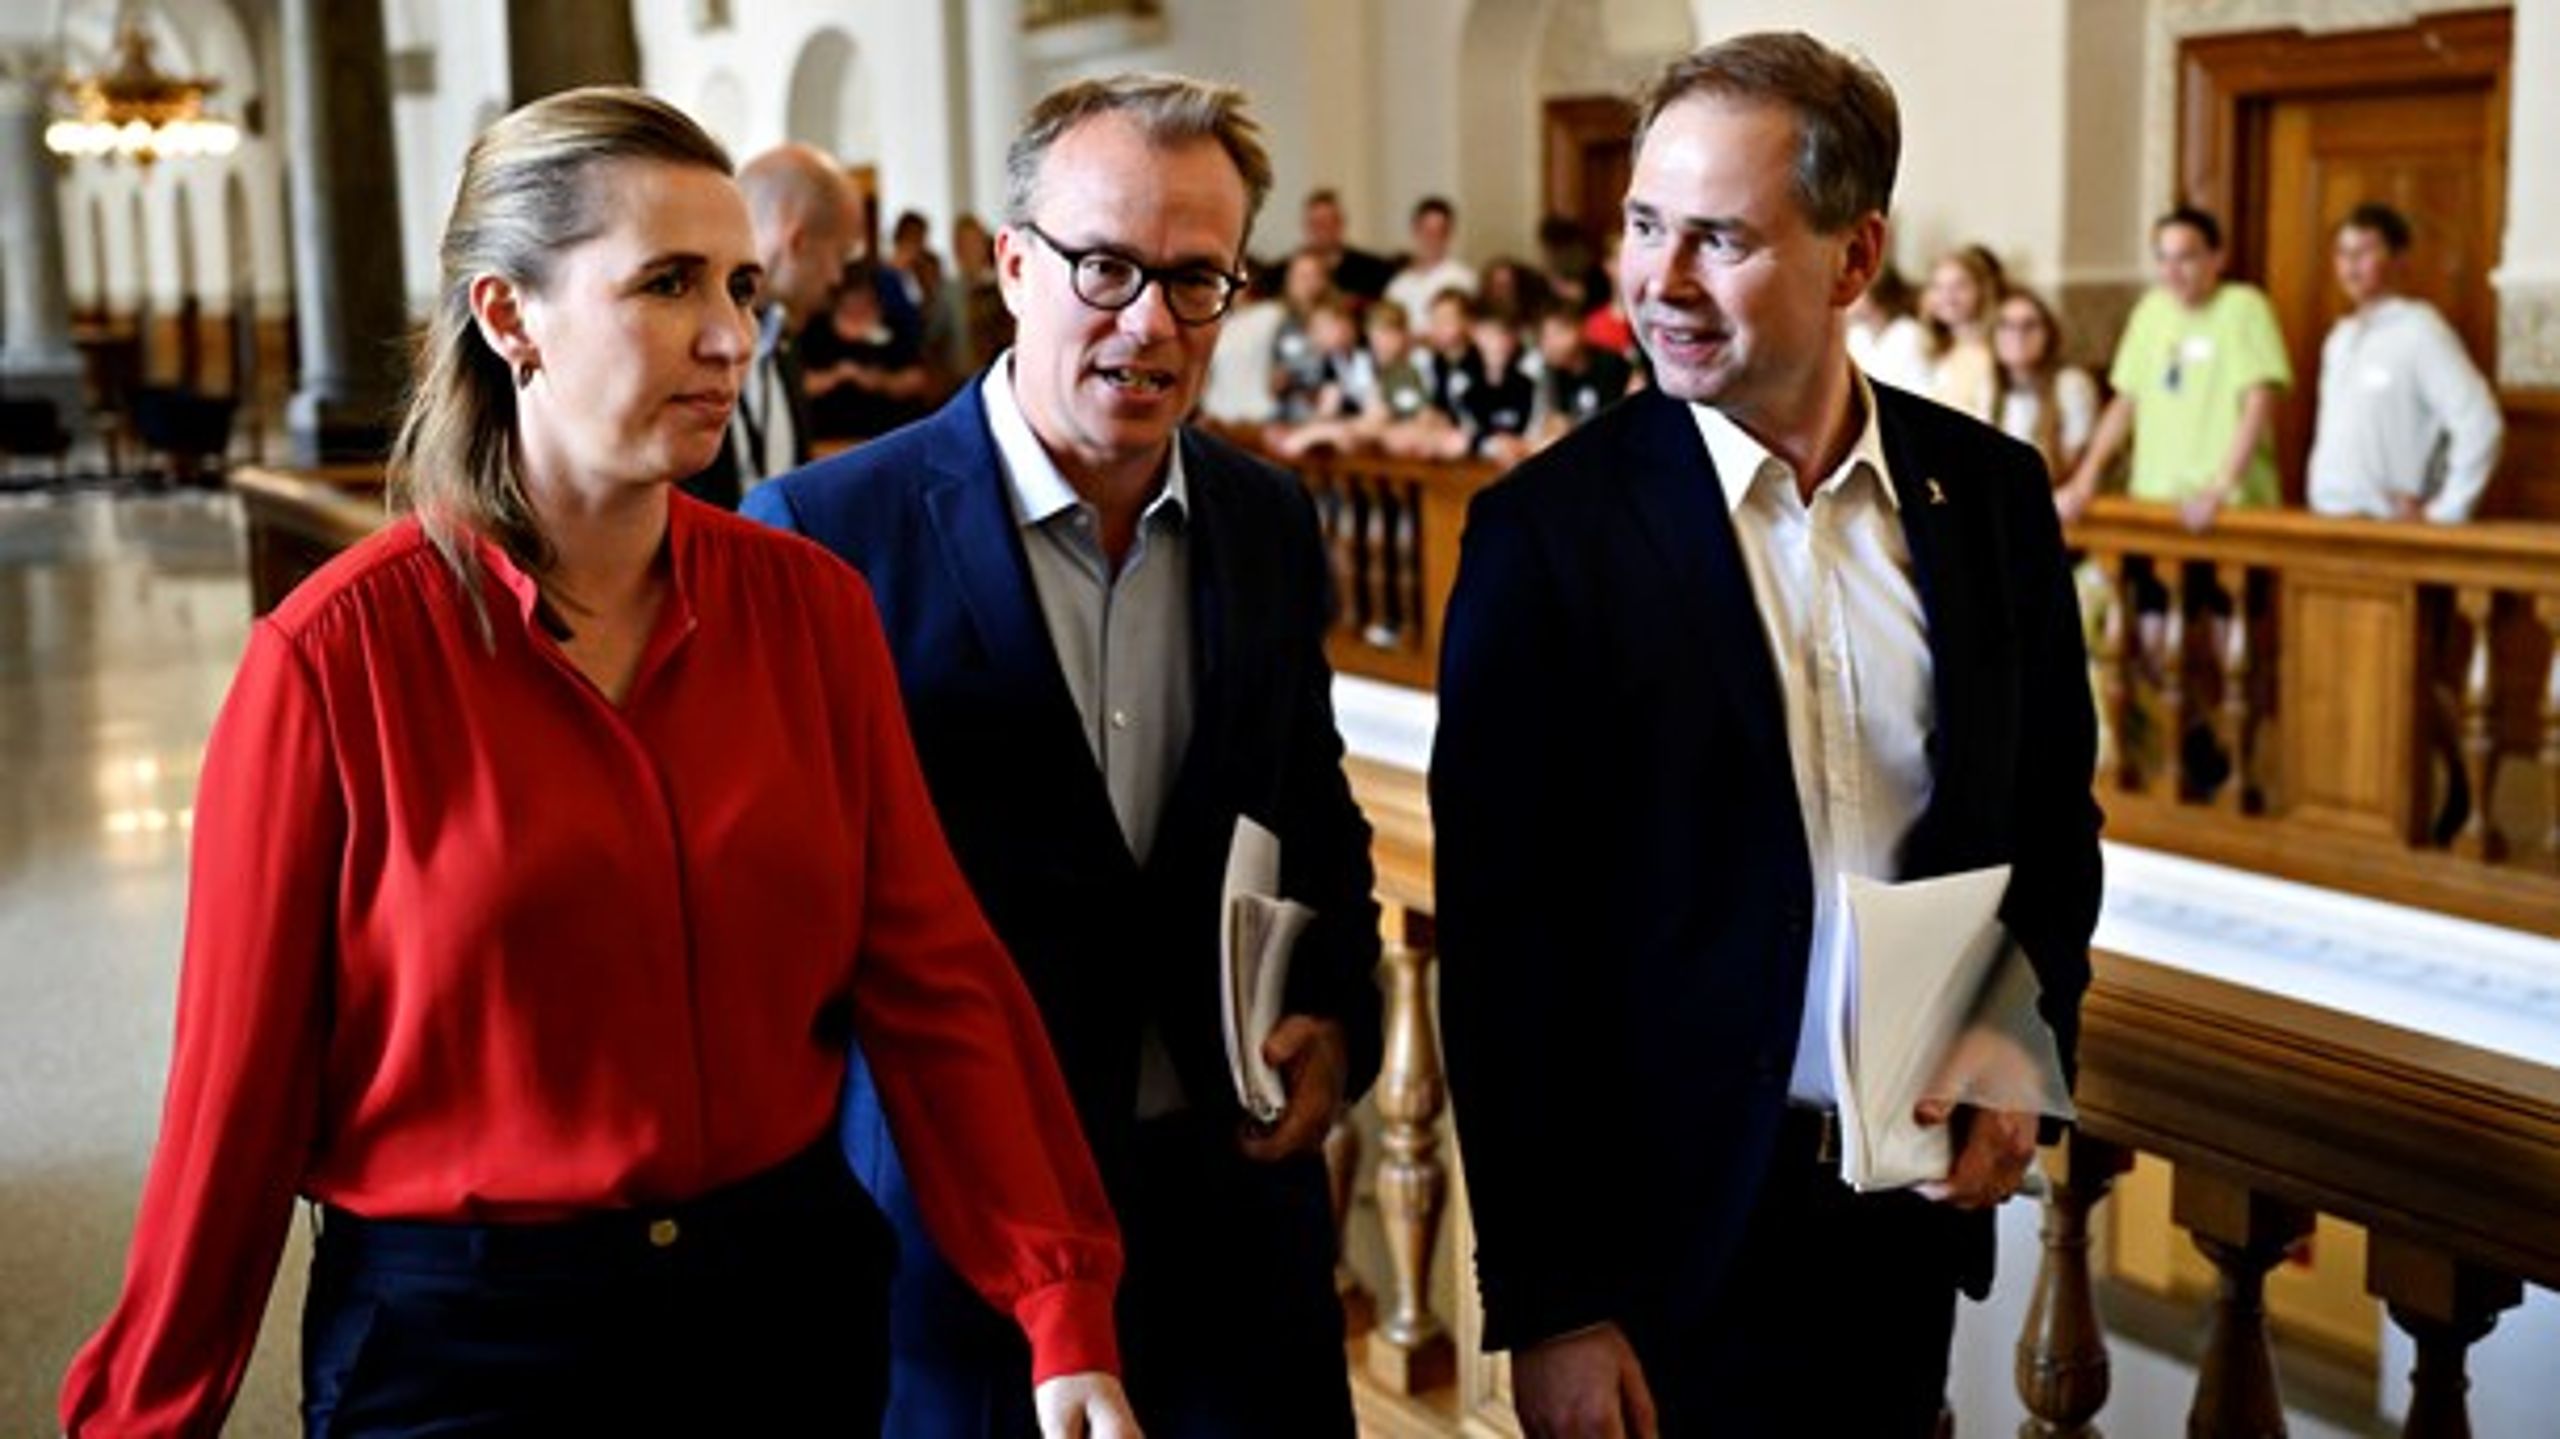 S-formand Mette Frederiksen med rådgiver Martin Rossen og næstformand Nicolai Wammen (S) på vej til forhandlinger med Enhedslisten tirsdag.